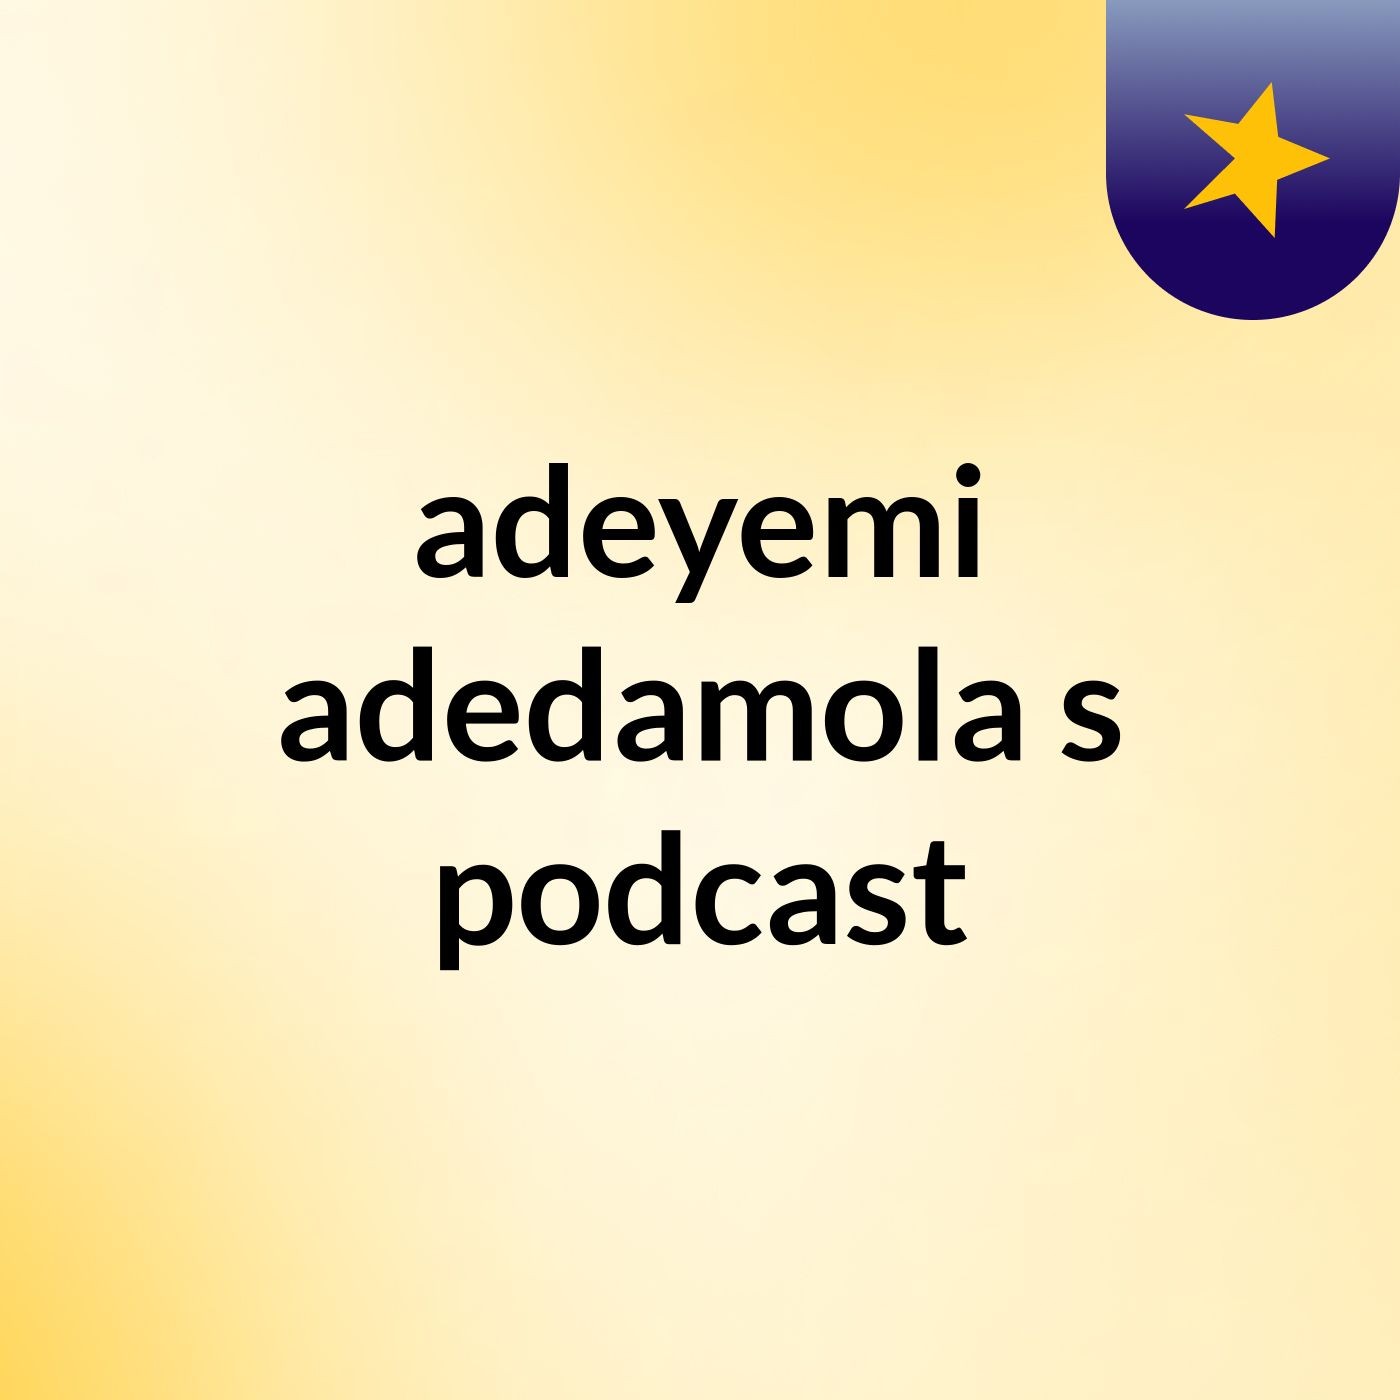 adeyemi adedamola's podcast